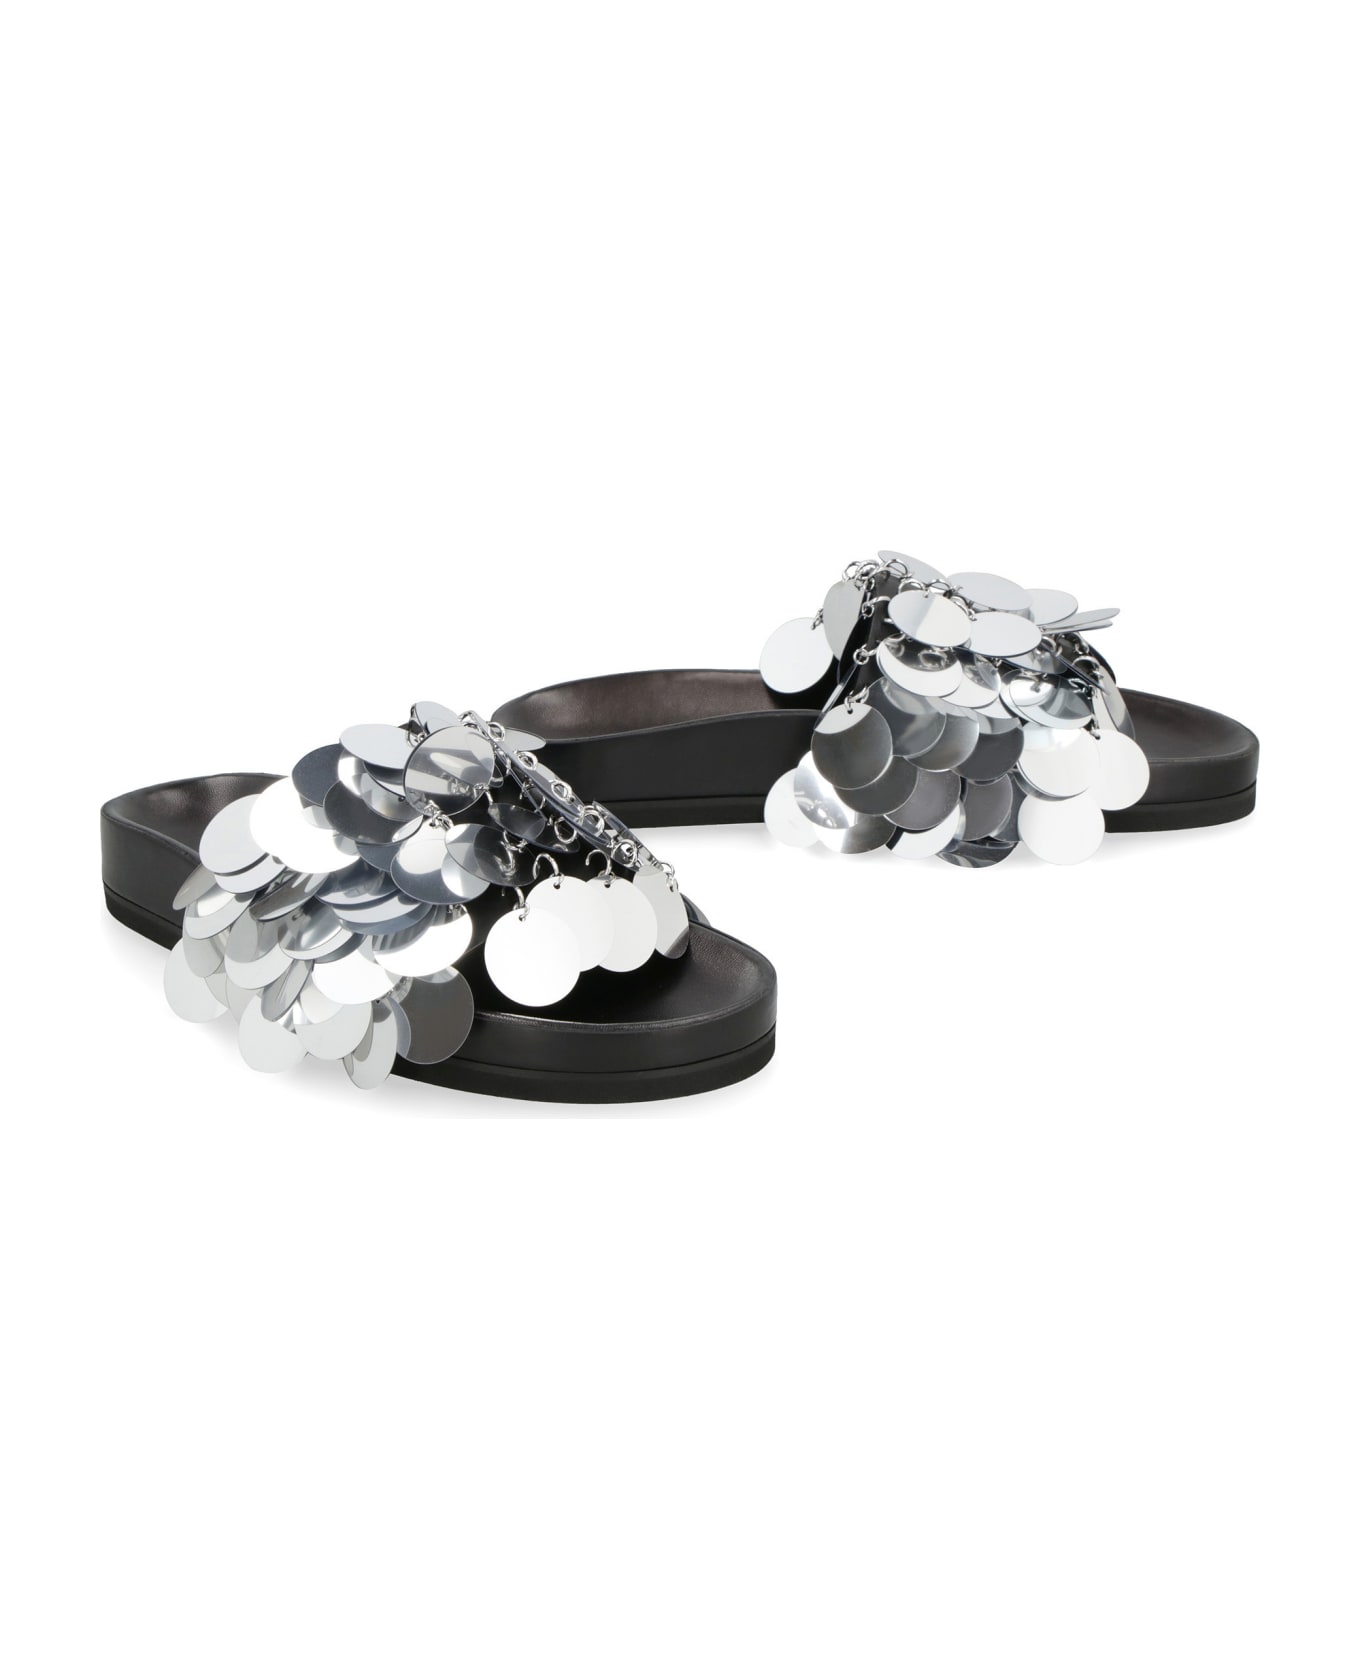 Paco Rabanne Sparkle Leather Slides With Decorative Appliqué - black